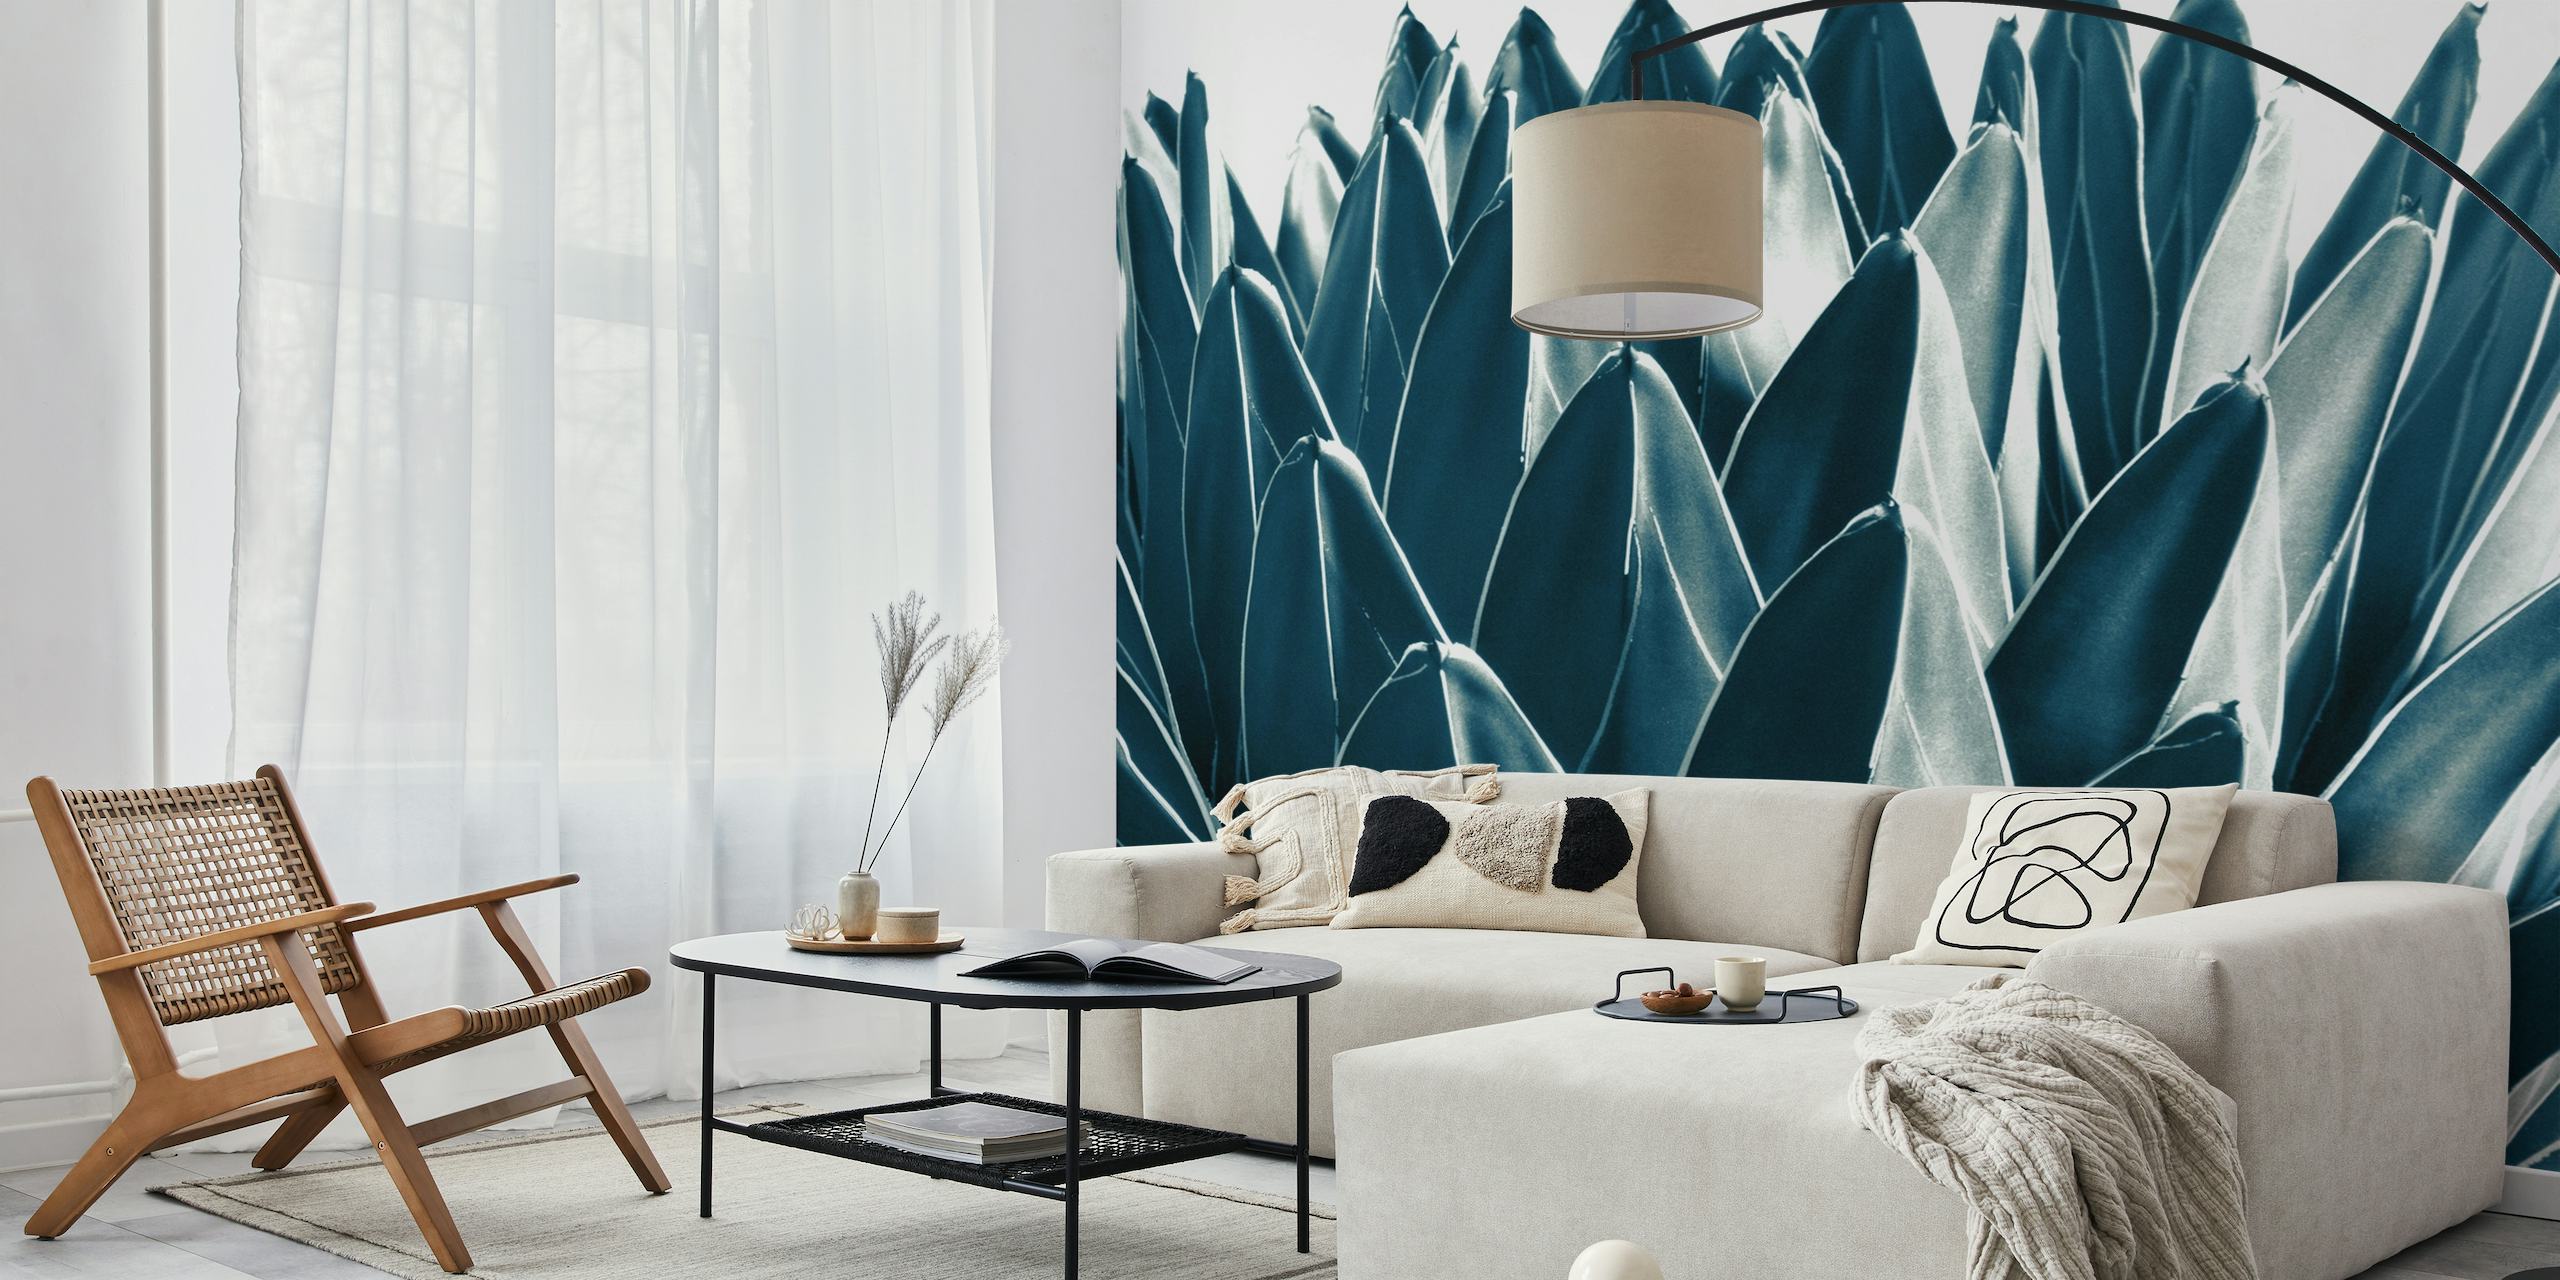 Monochromatische agave plantenbladeren muurschildering voor woondecoratie